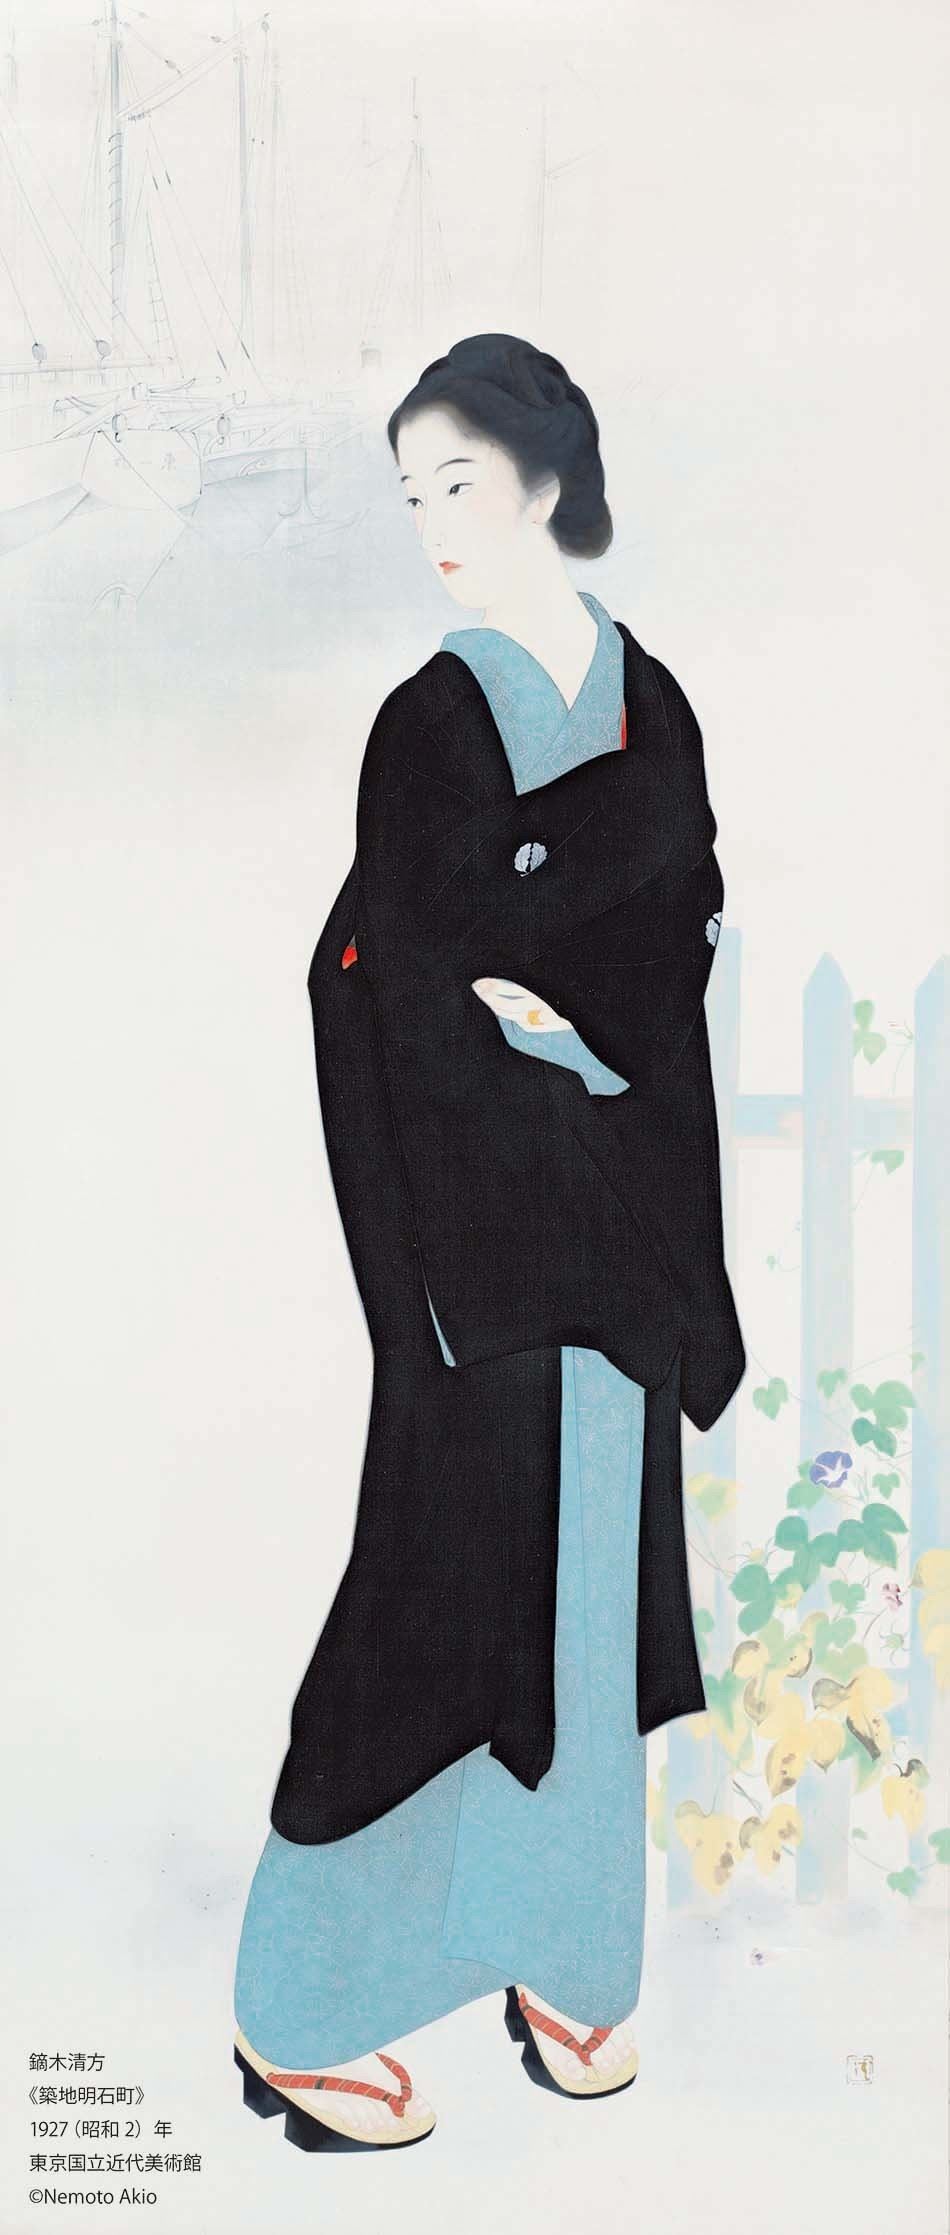 『没後50年 鏑木清方展』　鏑木清方《築地明石町》1927年　東京国立近代美術館　(c)Nemoto Akiko